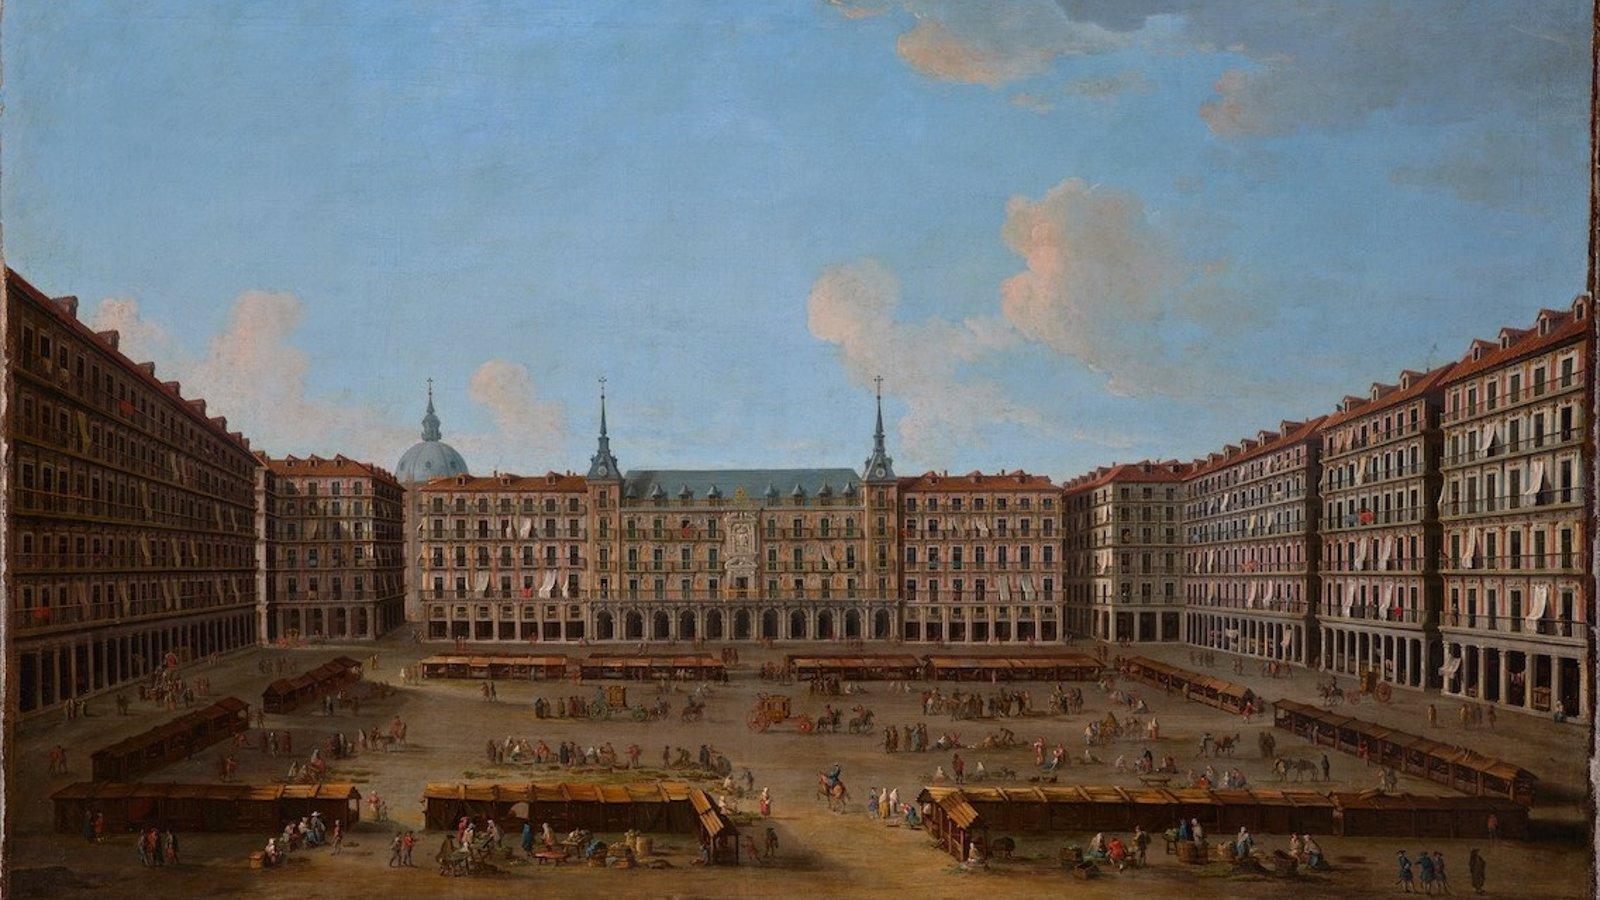 Una exposición en la Real Casa de Correos hasta el 23 de abril reúne 400 años de historia de Madrid a través de pinturas y dibujos